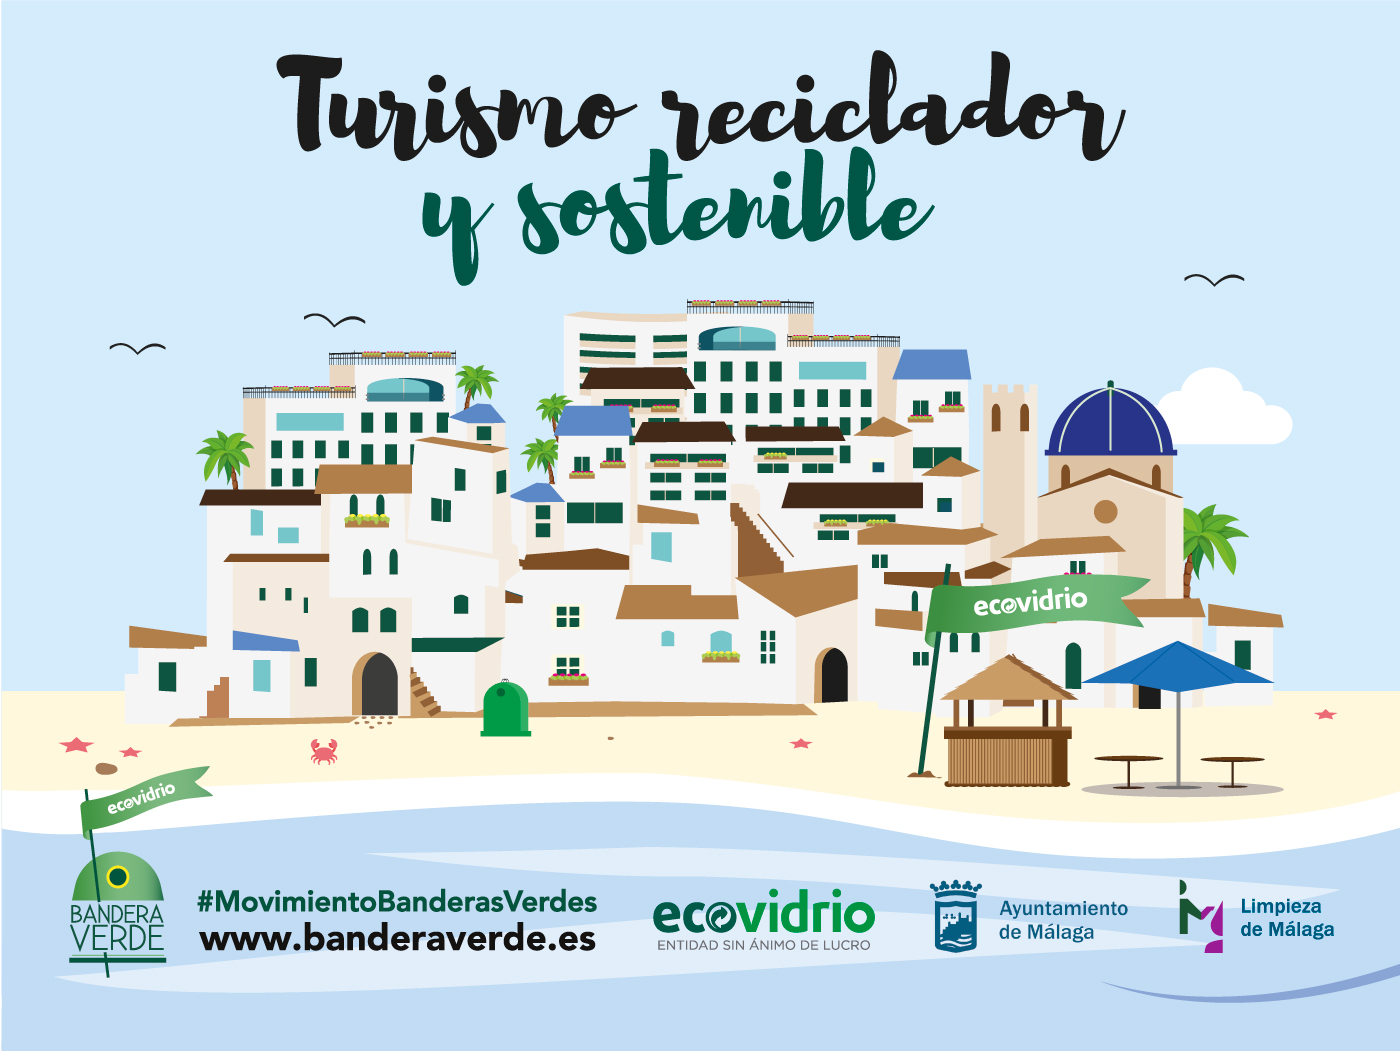 turismo reciclador y sostenible, ciudad en 2d, logos ecovidrio, limasam, ayuntamiento de málaga. Movimiento banderas verdes